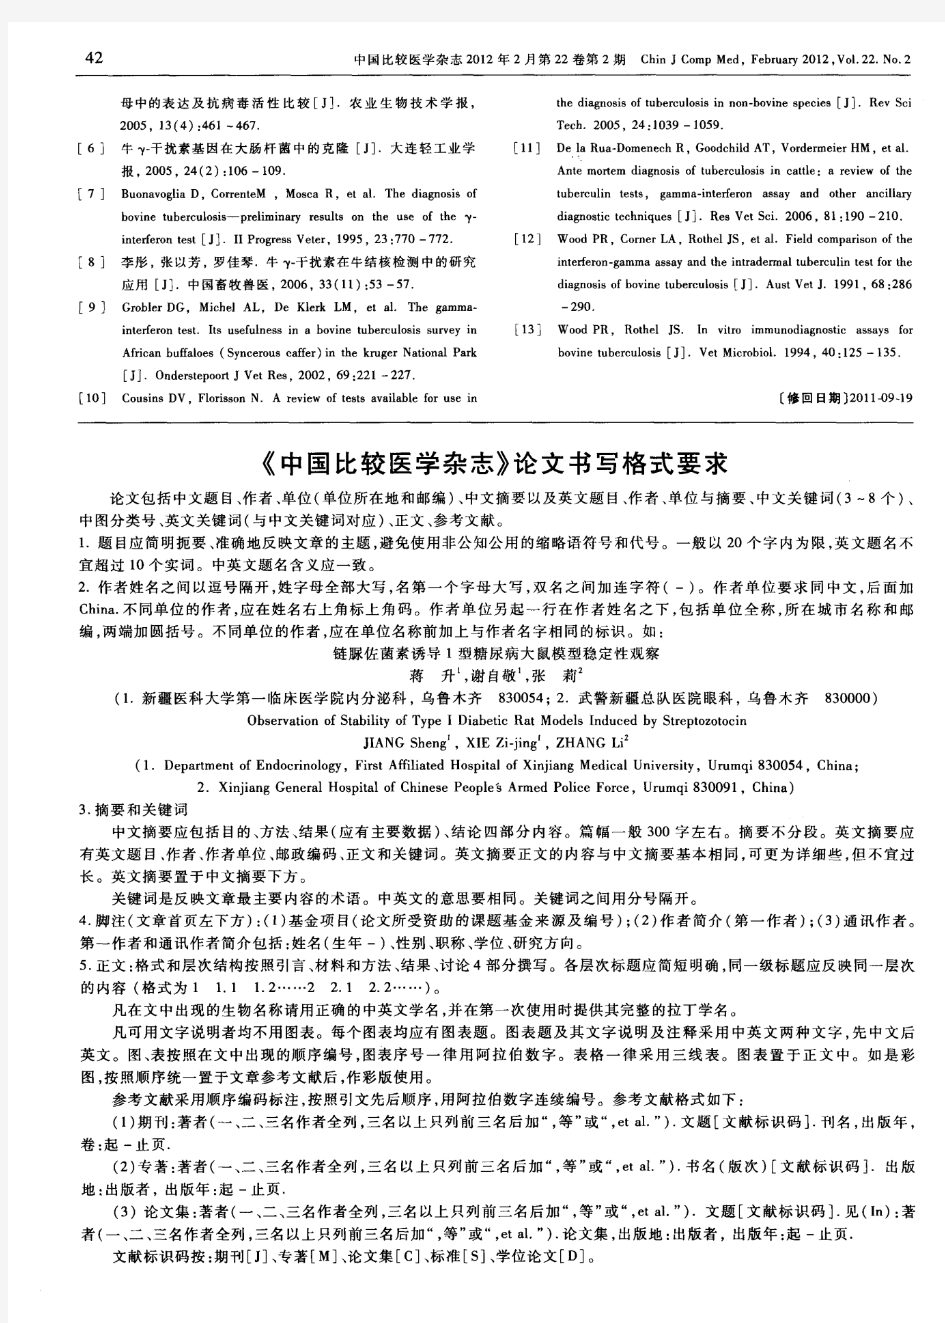 《中国比较医学杂志》论文书写格式要求